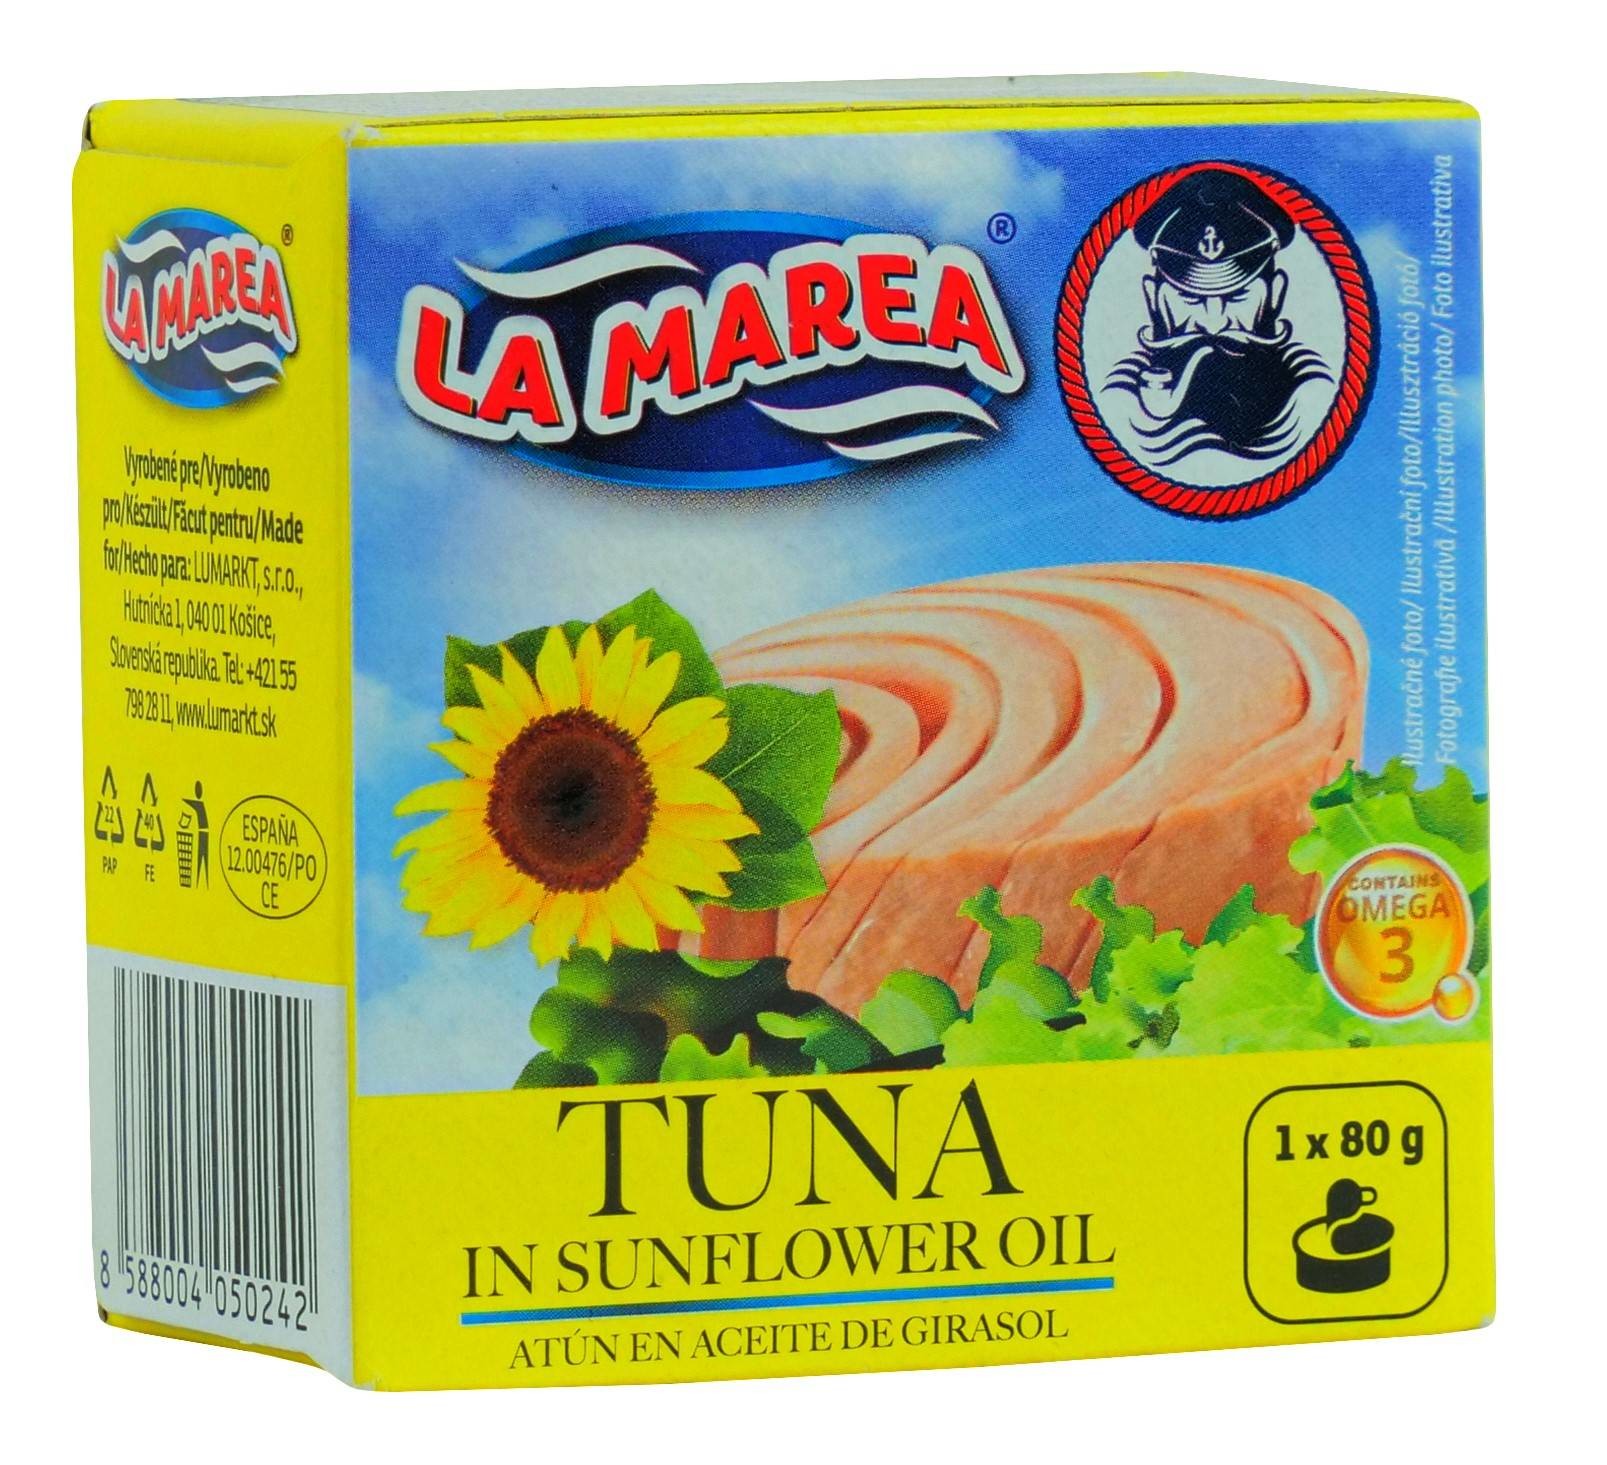 Tuna in sunflower oil, EO 